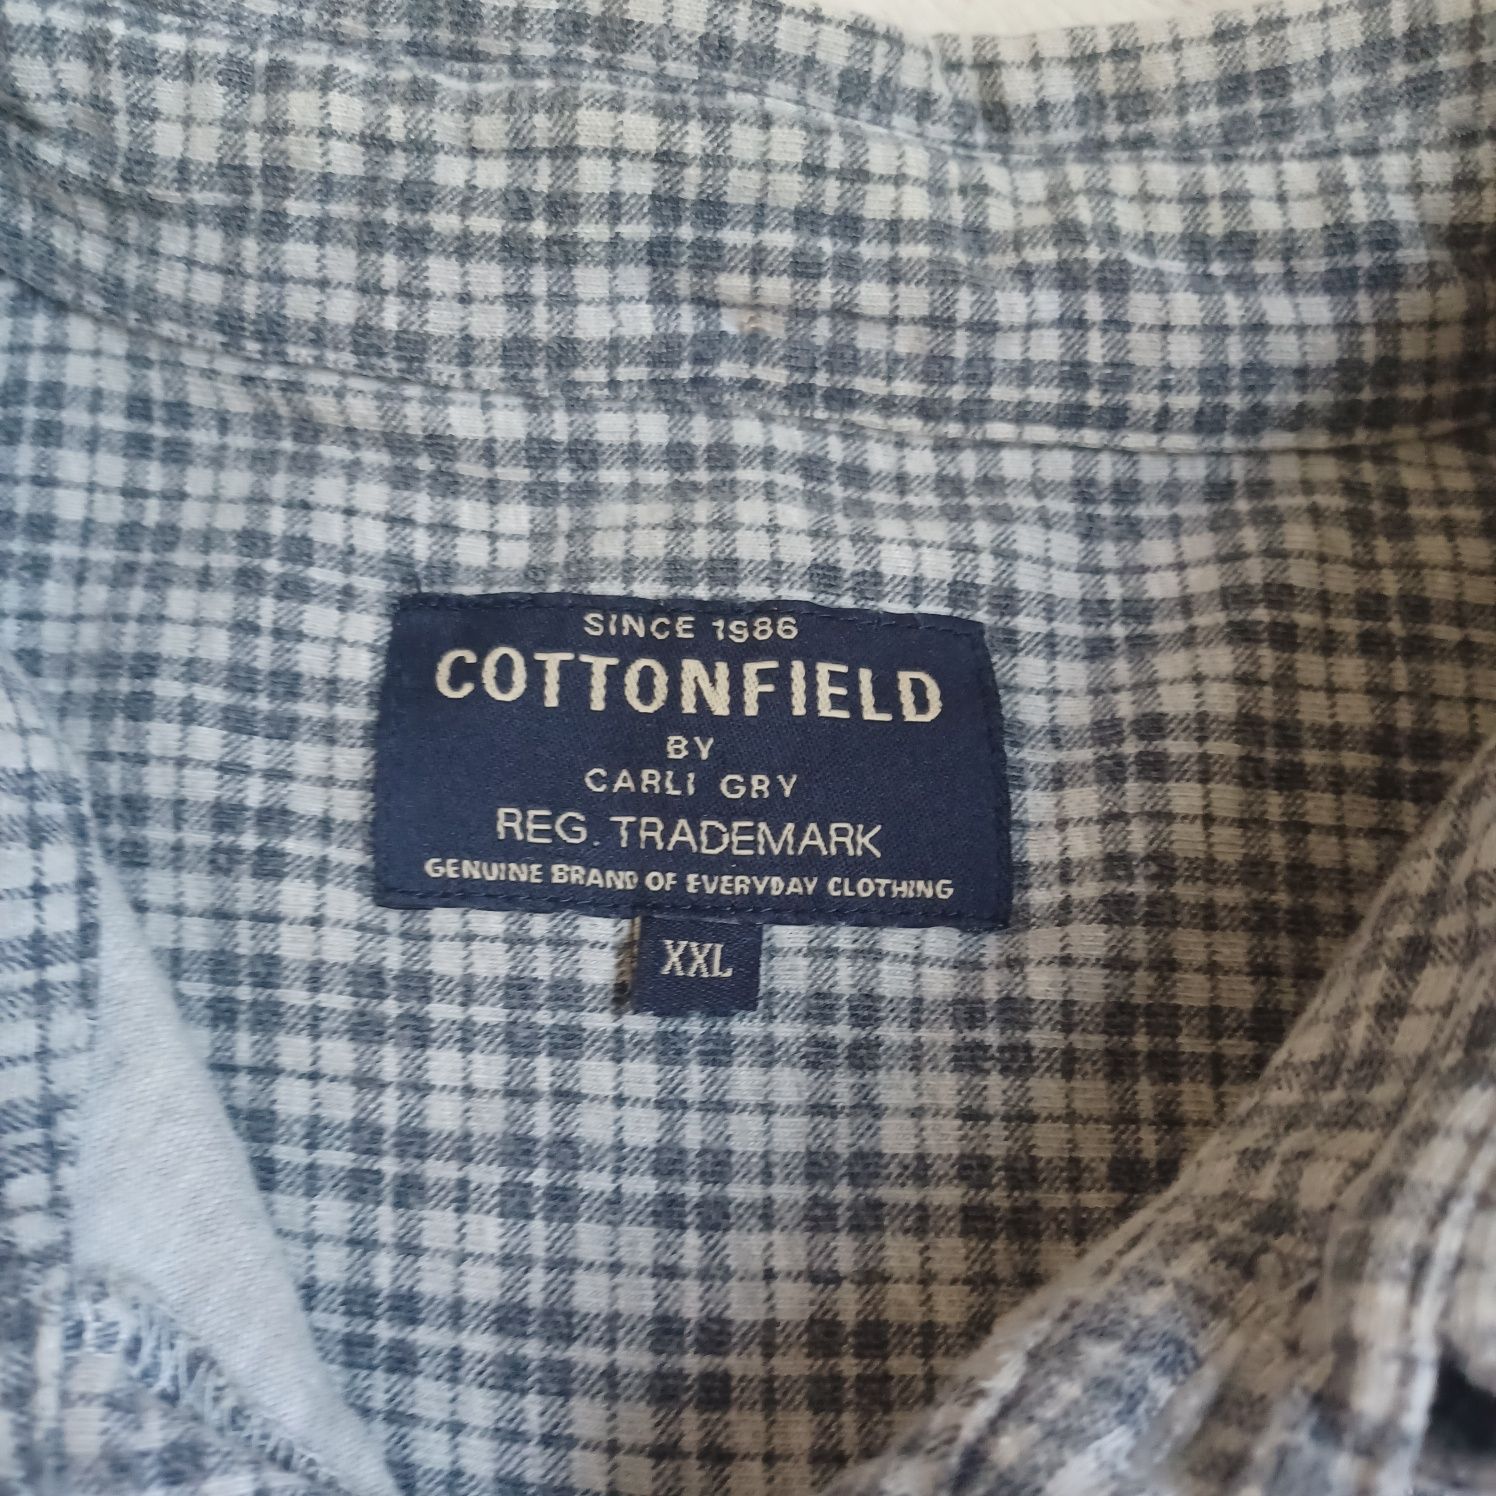 Gruba miękka koszula firmy COTTON FIELD XXL/ materiał dresowy